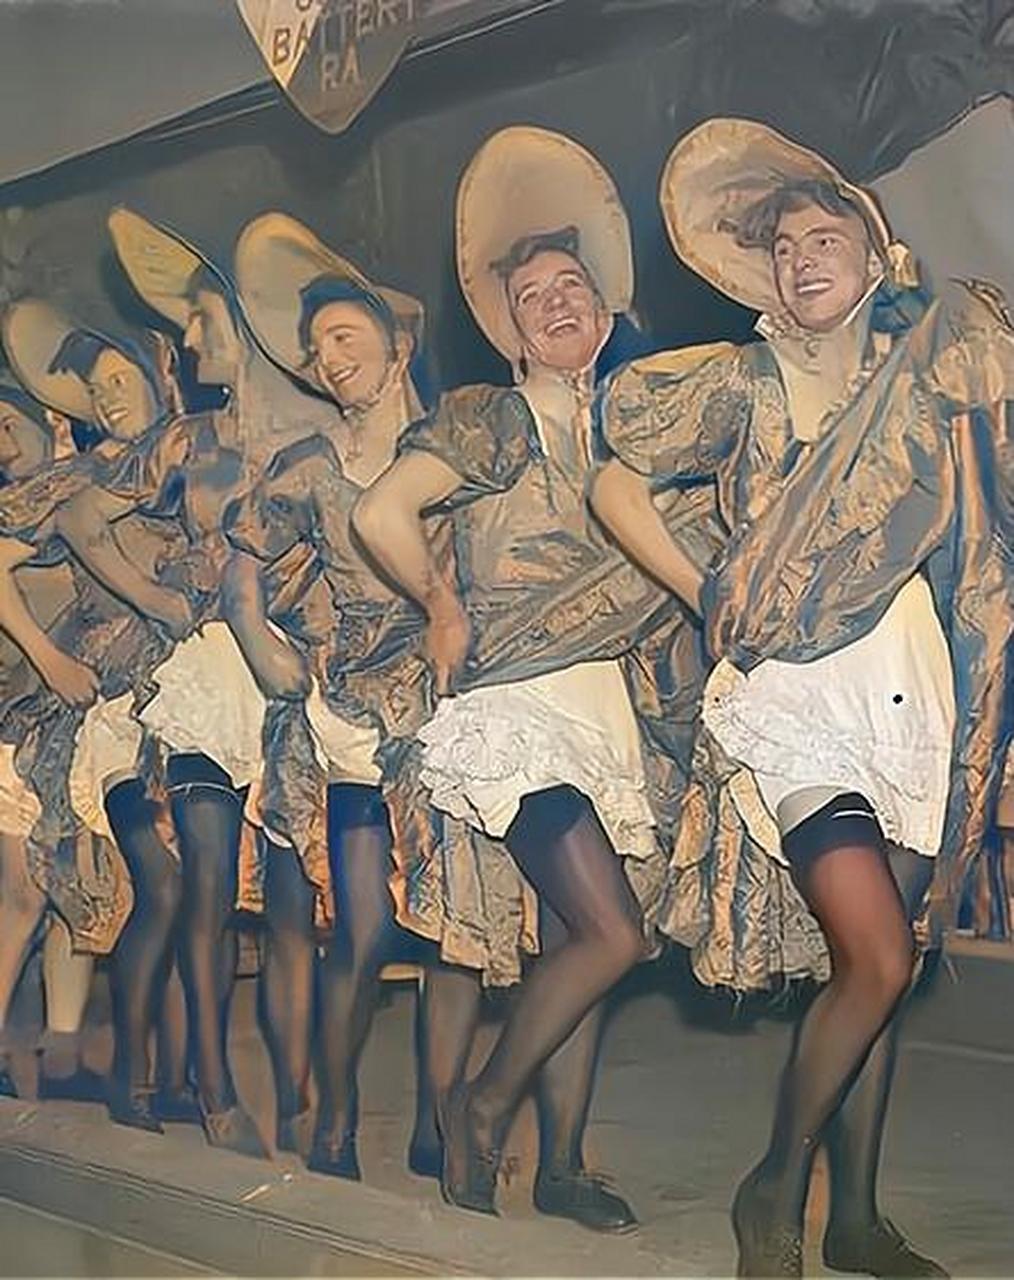 照片中是穿上女装和丝袜后的英国大兵们